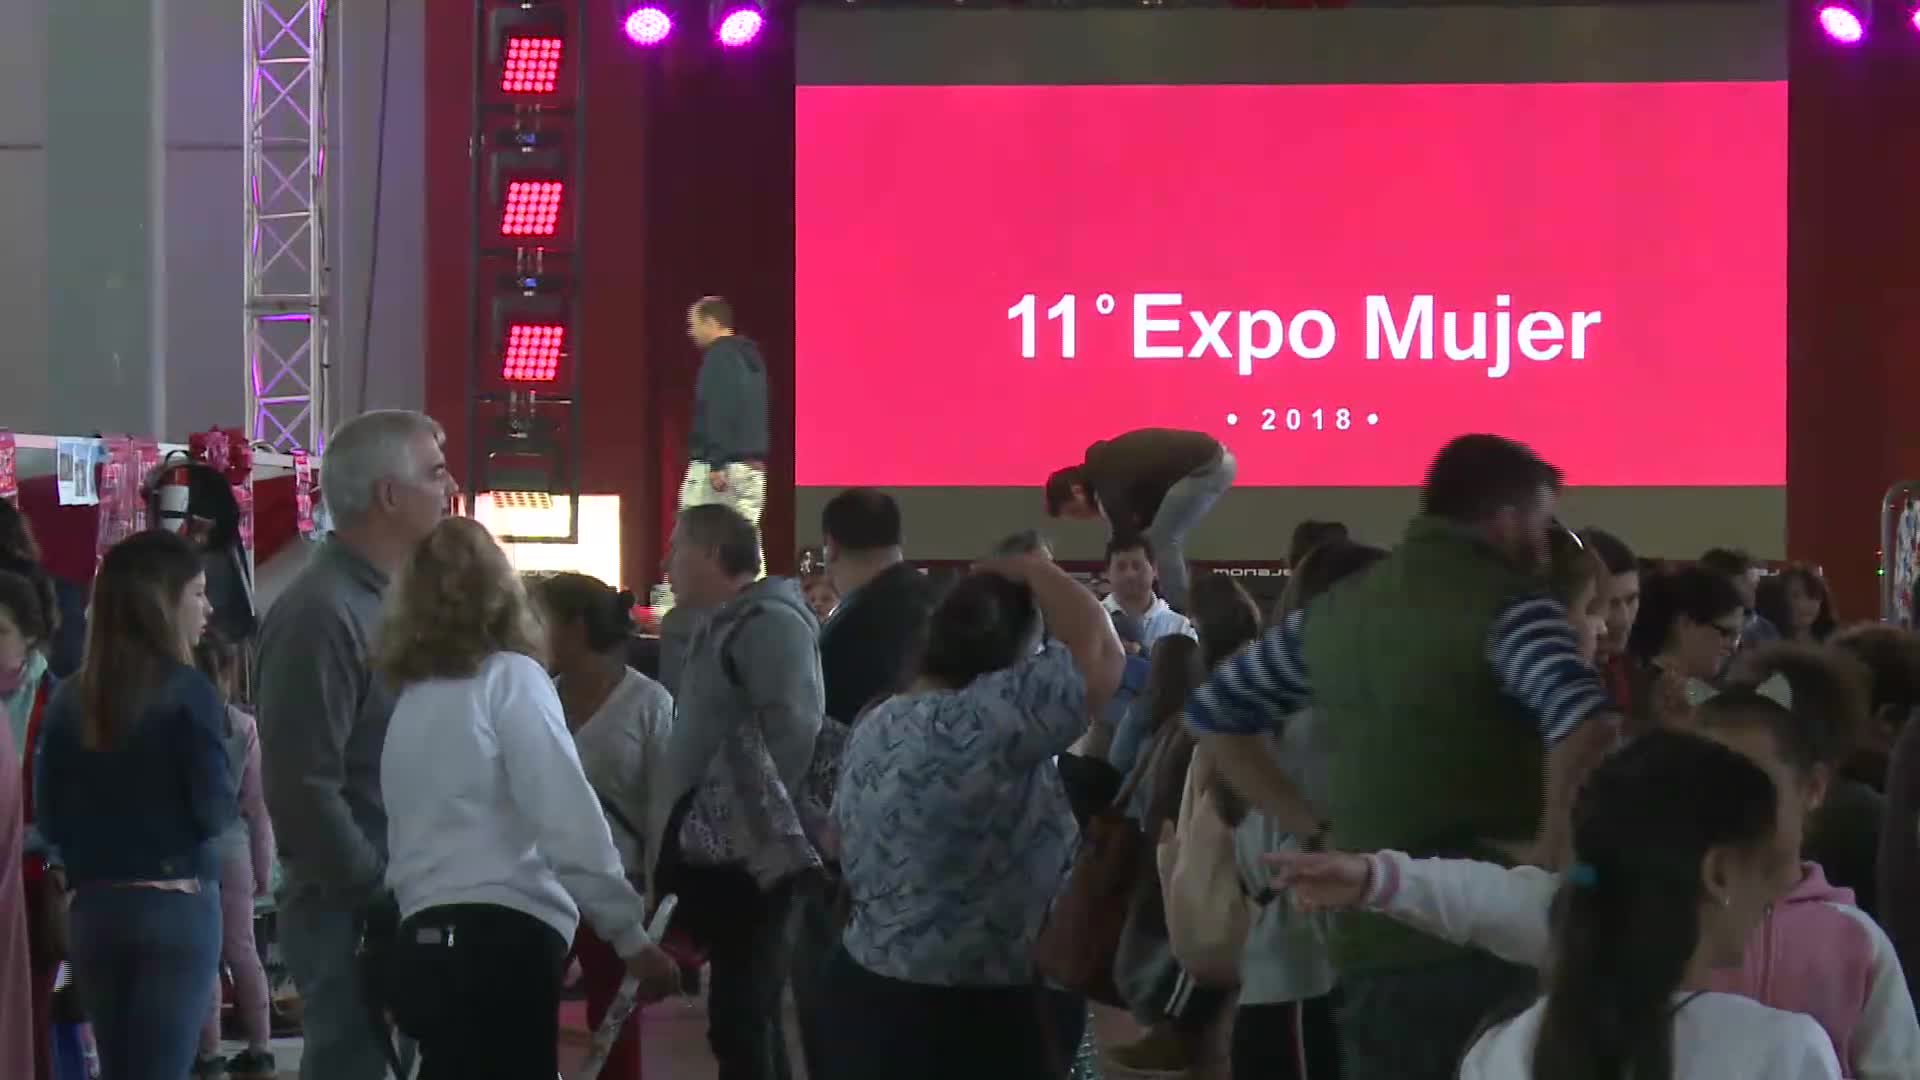 Expo Mujer 2018: miles de personas concurrieron a la feria artesanal y gastronómica